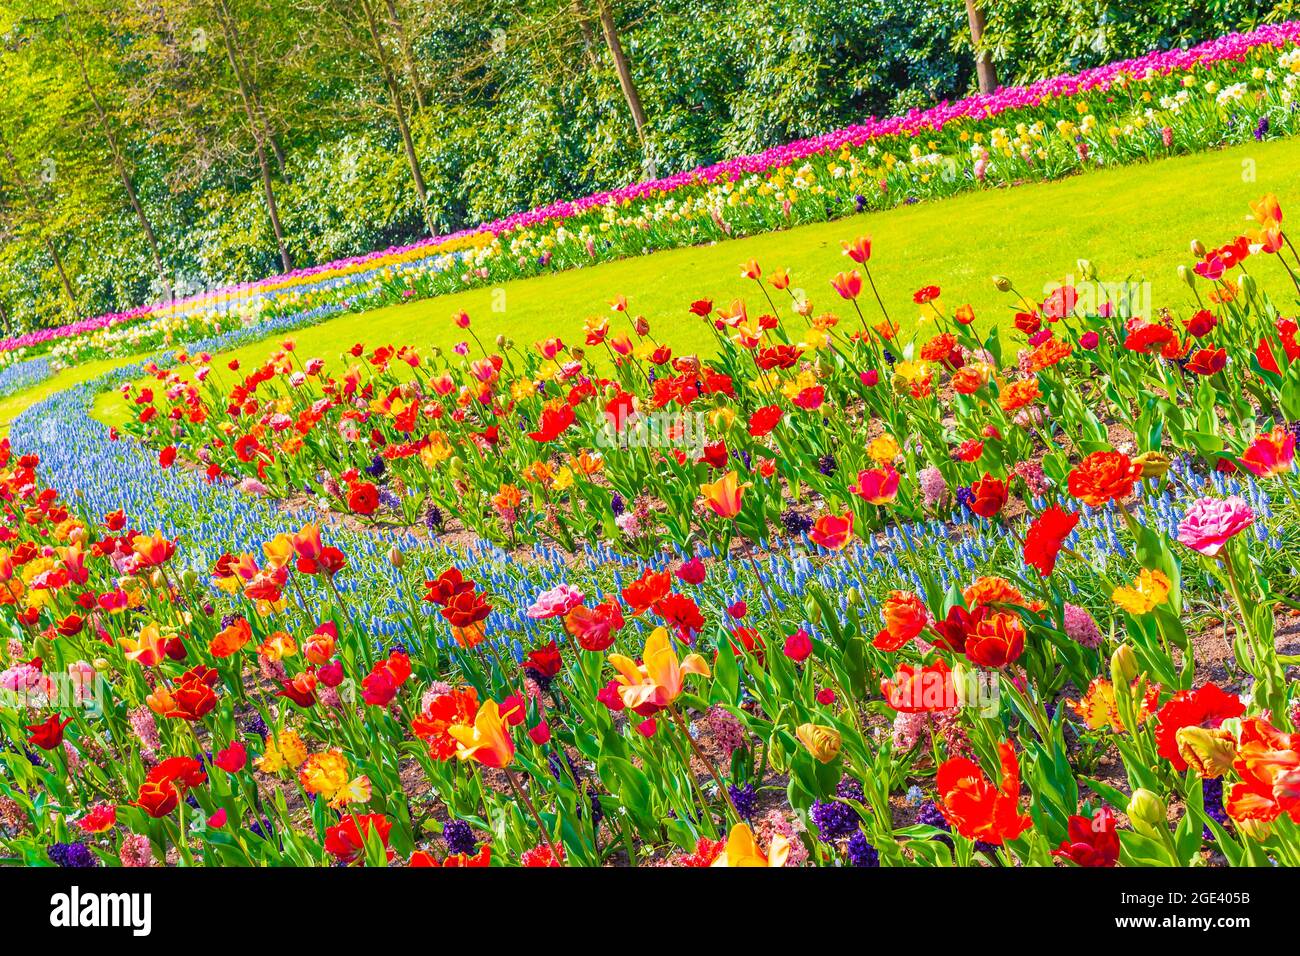 Tulipani e narcisi colorati di colore rosso e giallo viola nel parco dei tulipani di Keukenhof a Lisse, Olanda meridionale Foto Stock